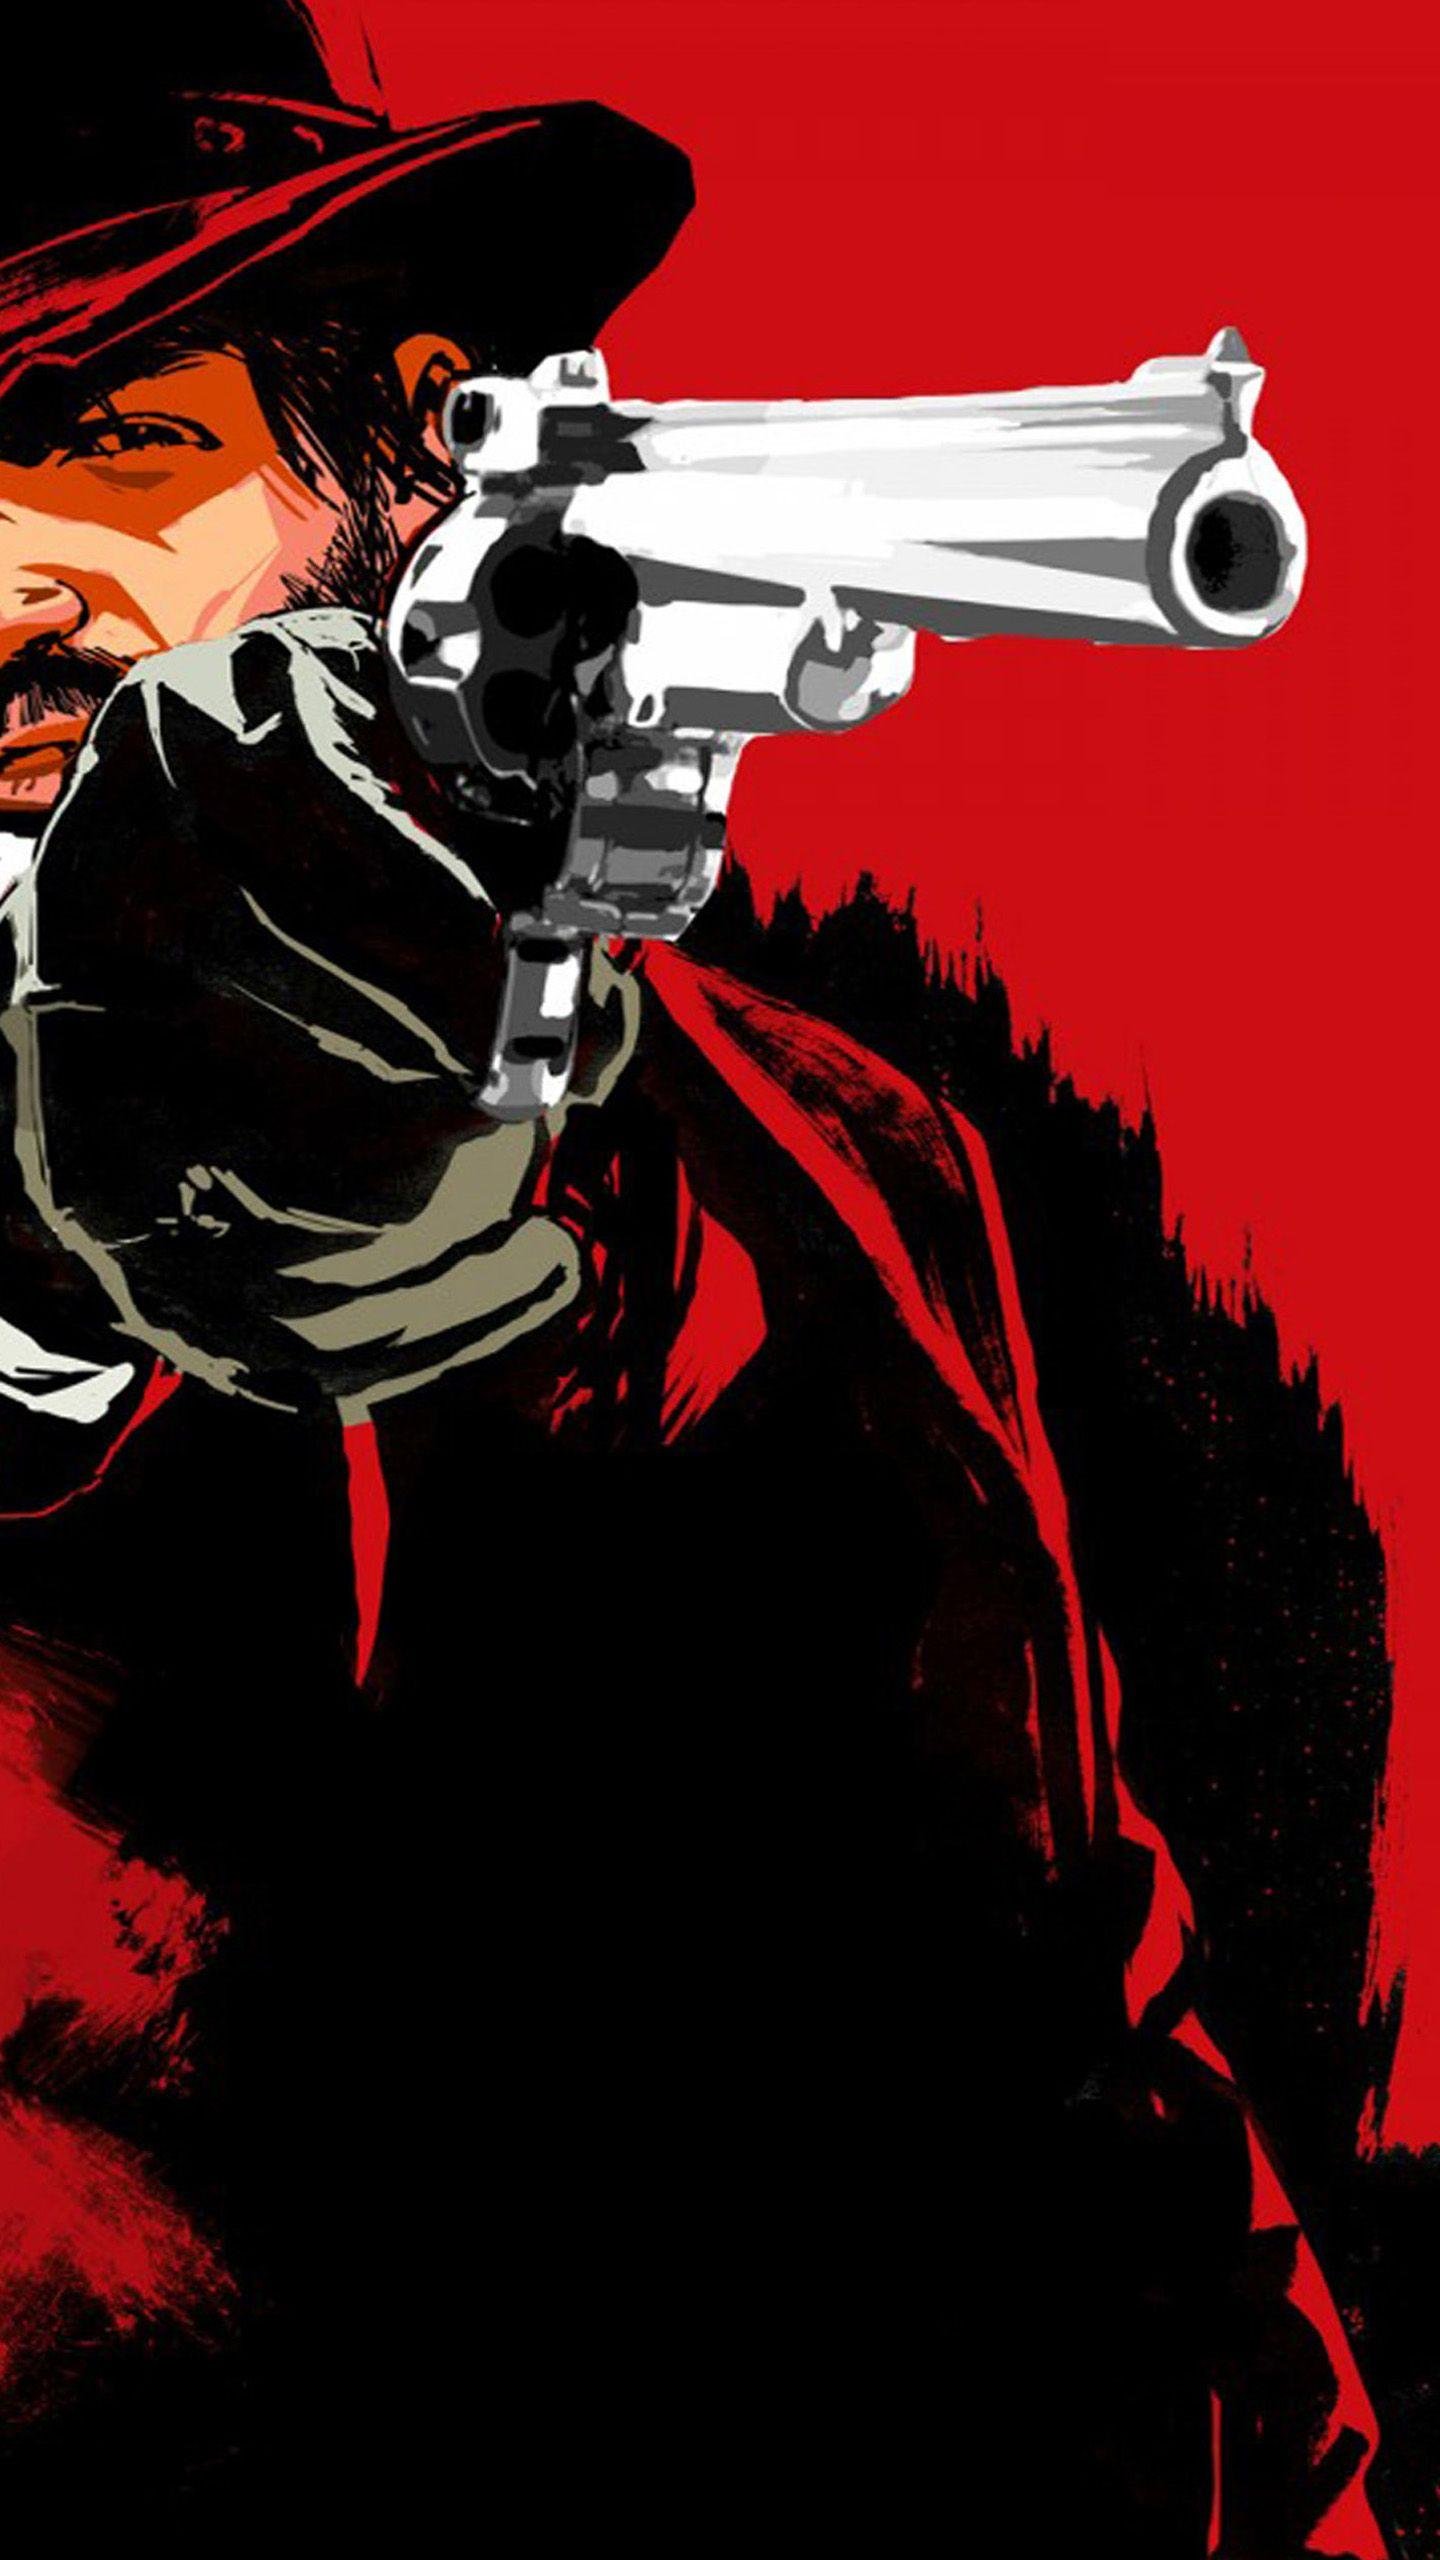 Wallpaper hat cowboy art Rockstar red dead redemption john marston  images for desktop section игры  download